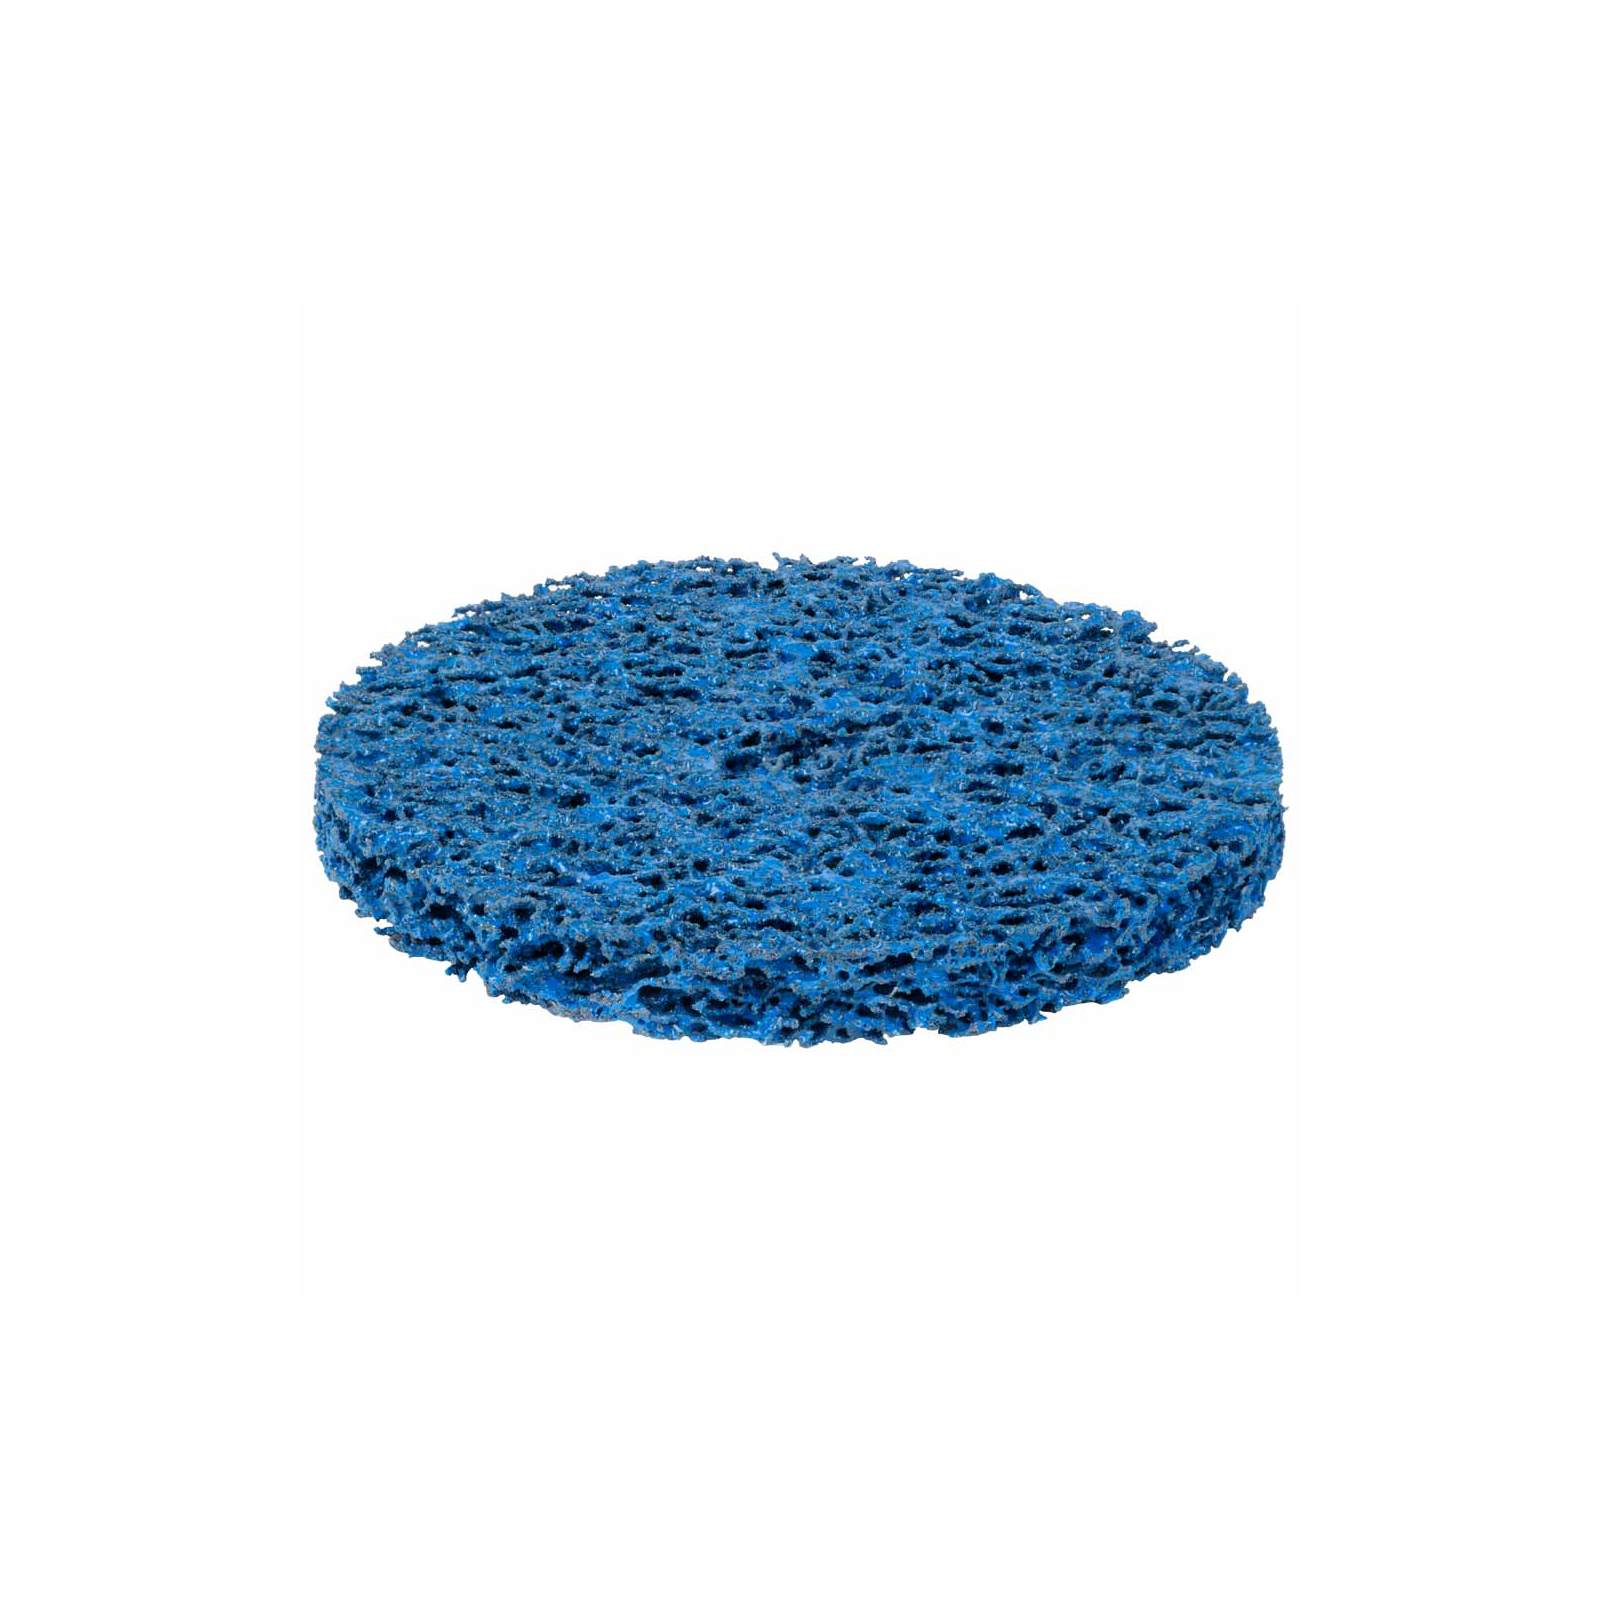 Круг зачистной Sigma из нетканого абразива (коралл) 125мм без держателя синий средняя жесткость (9175761) изображение 2